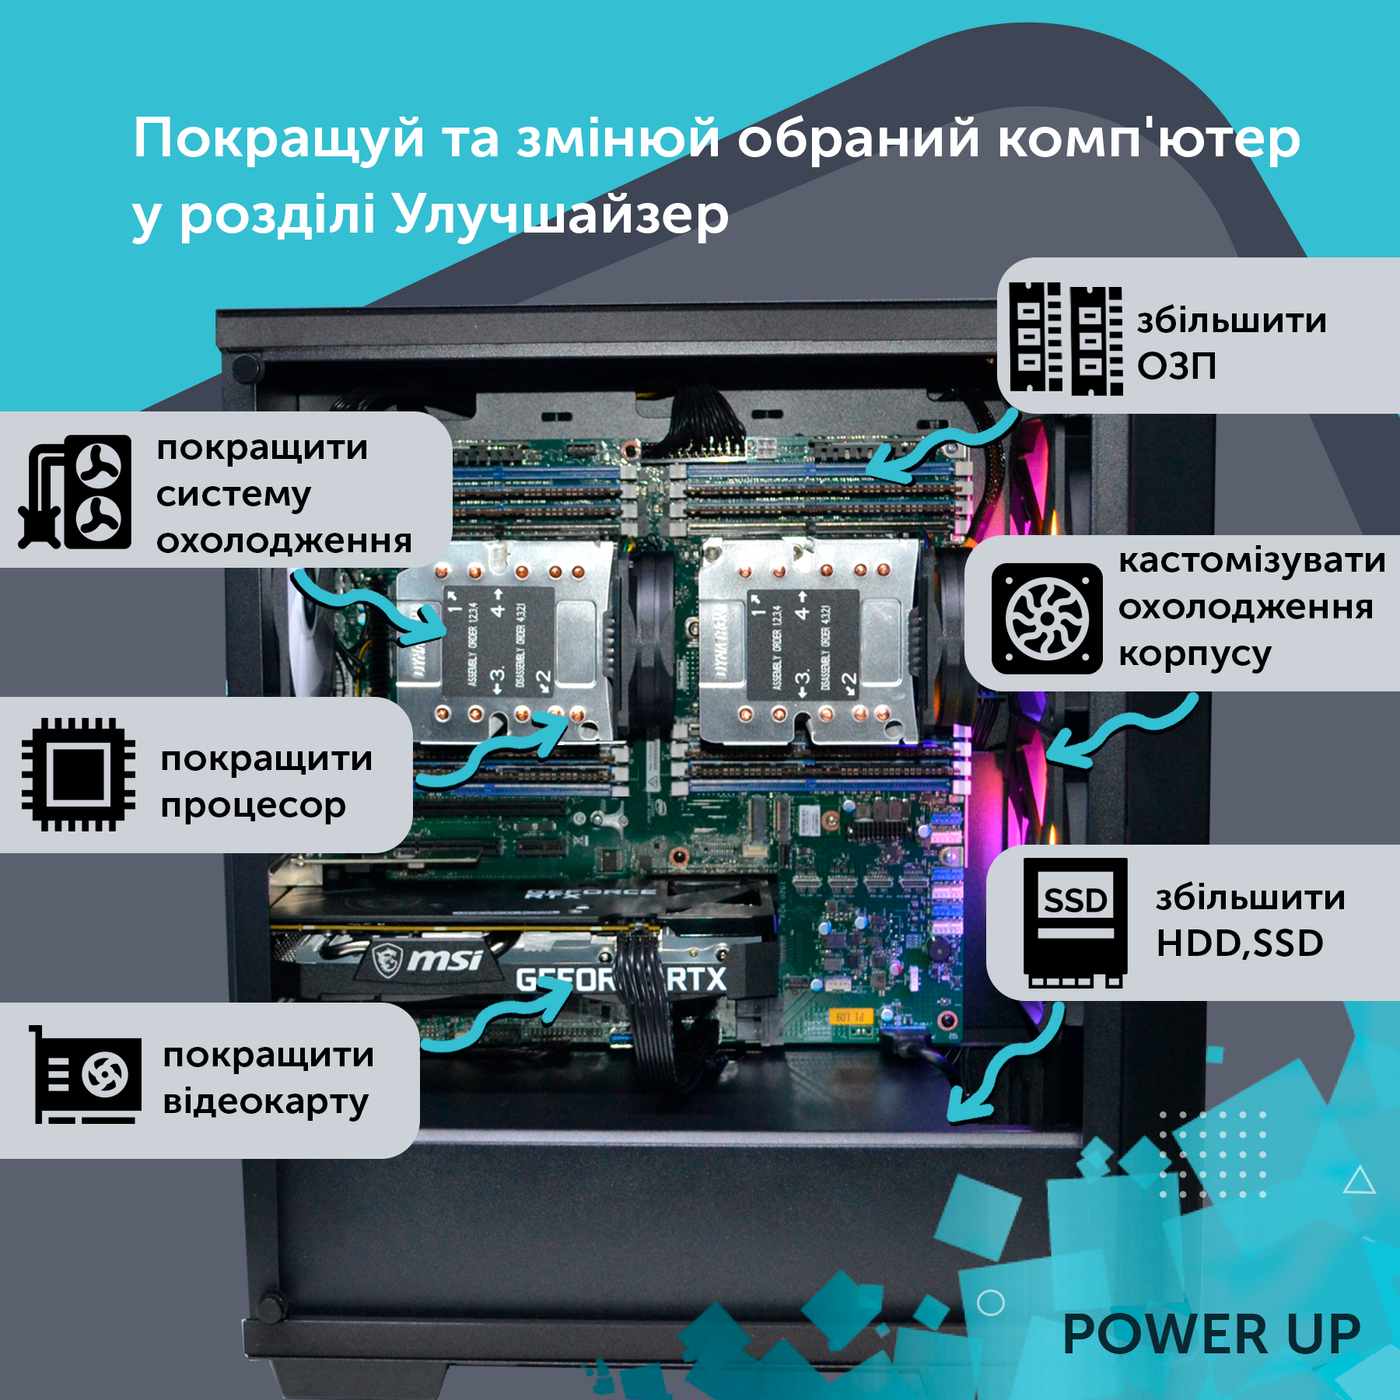 Робоча станція PowerUp Desktop #258 Core i7 13700K/32 GB/SSD 512GB/GeForce RTX 4060 8GB